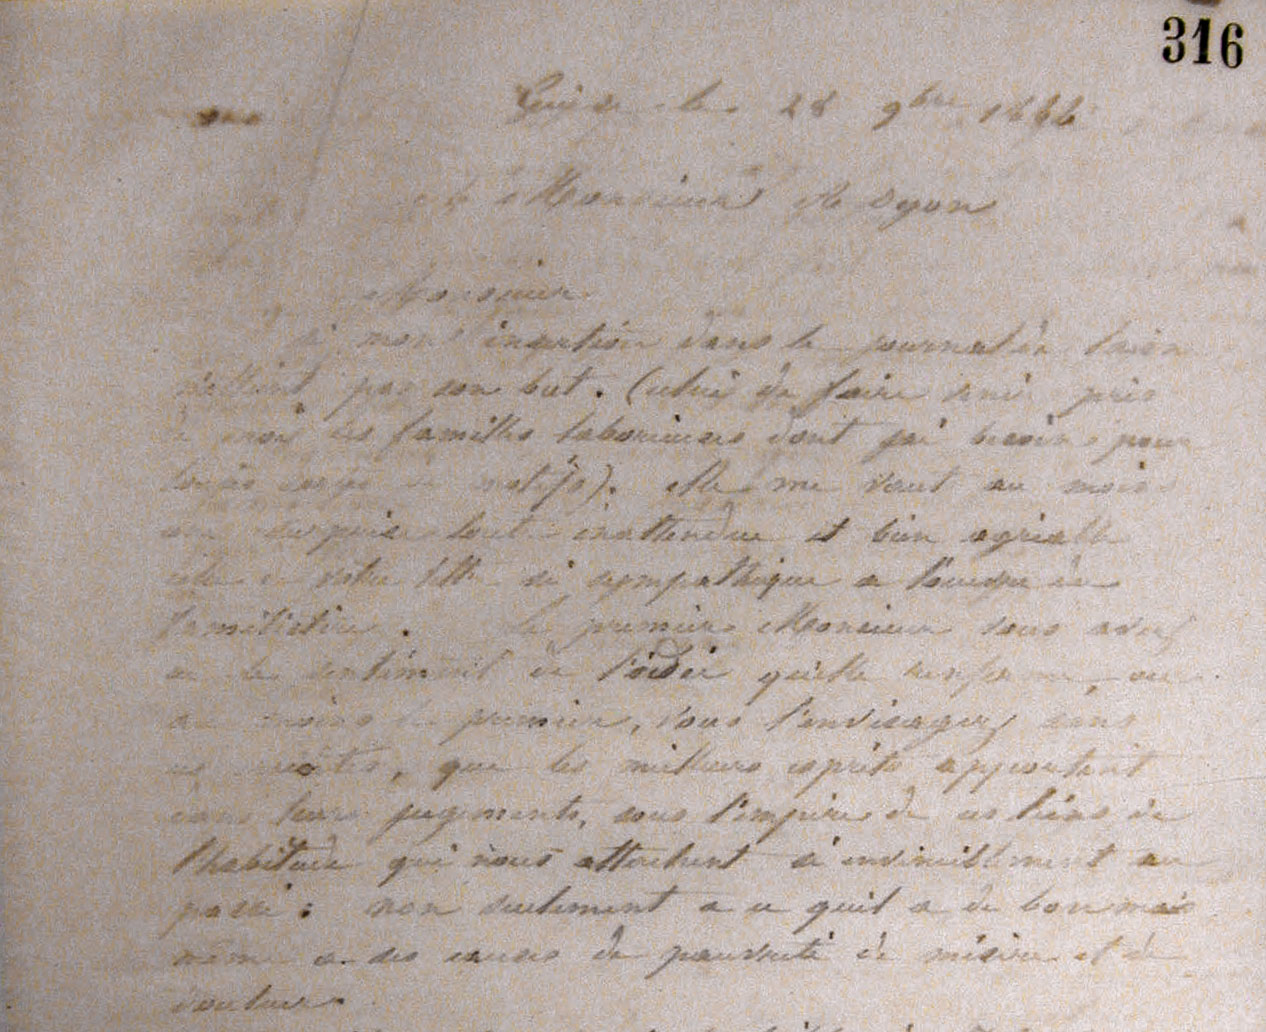 Vue d'une lettre manuscrite de Godin à Alexandre Oyon